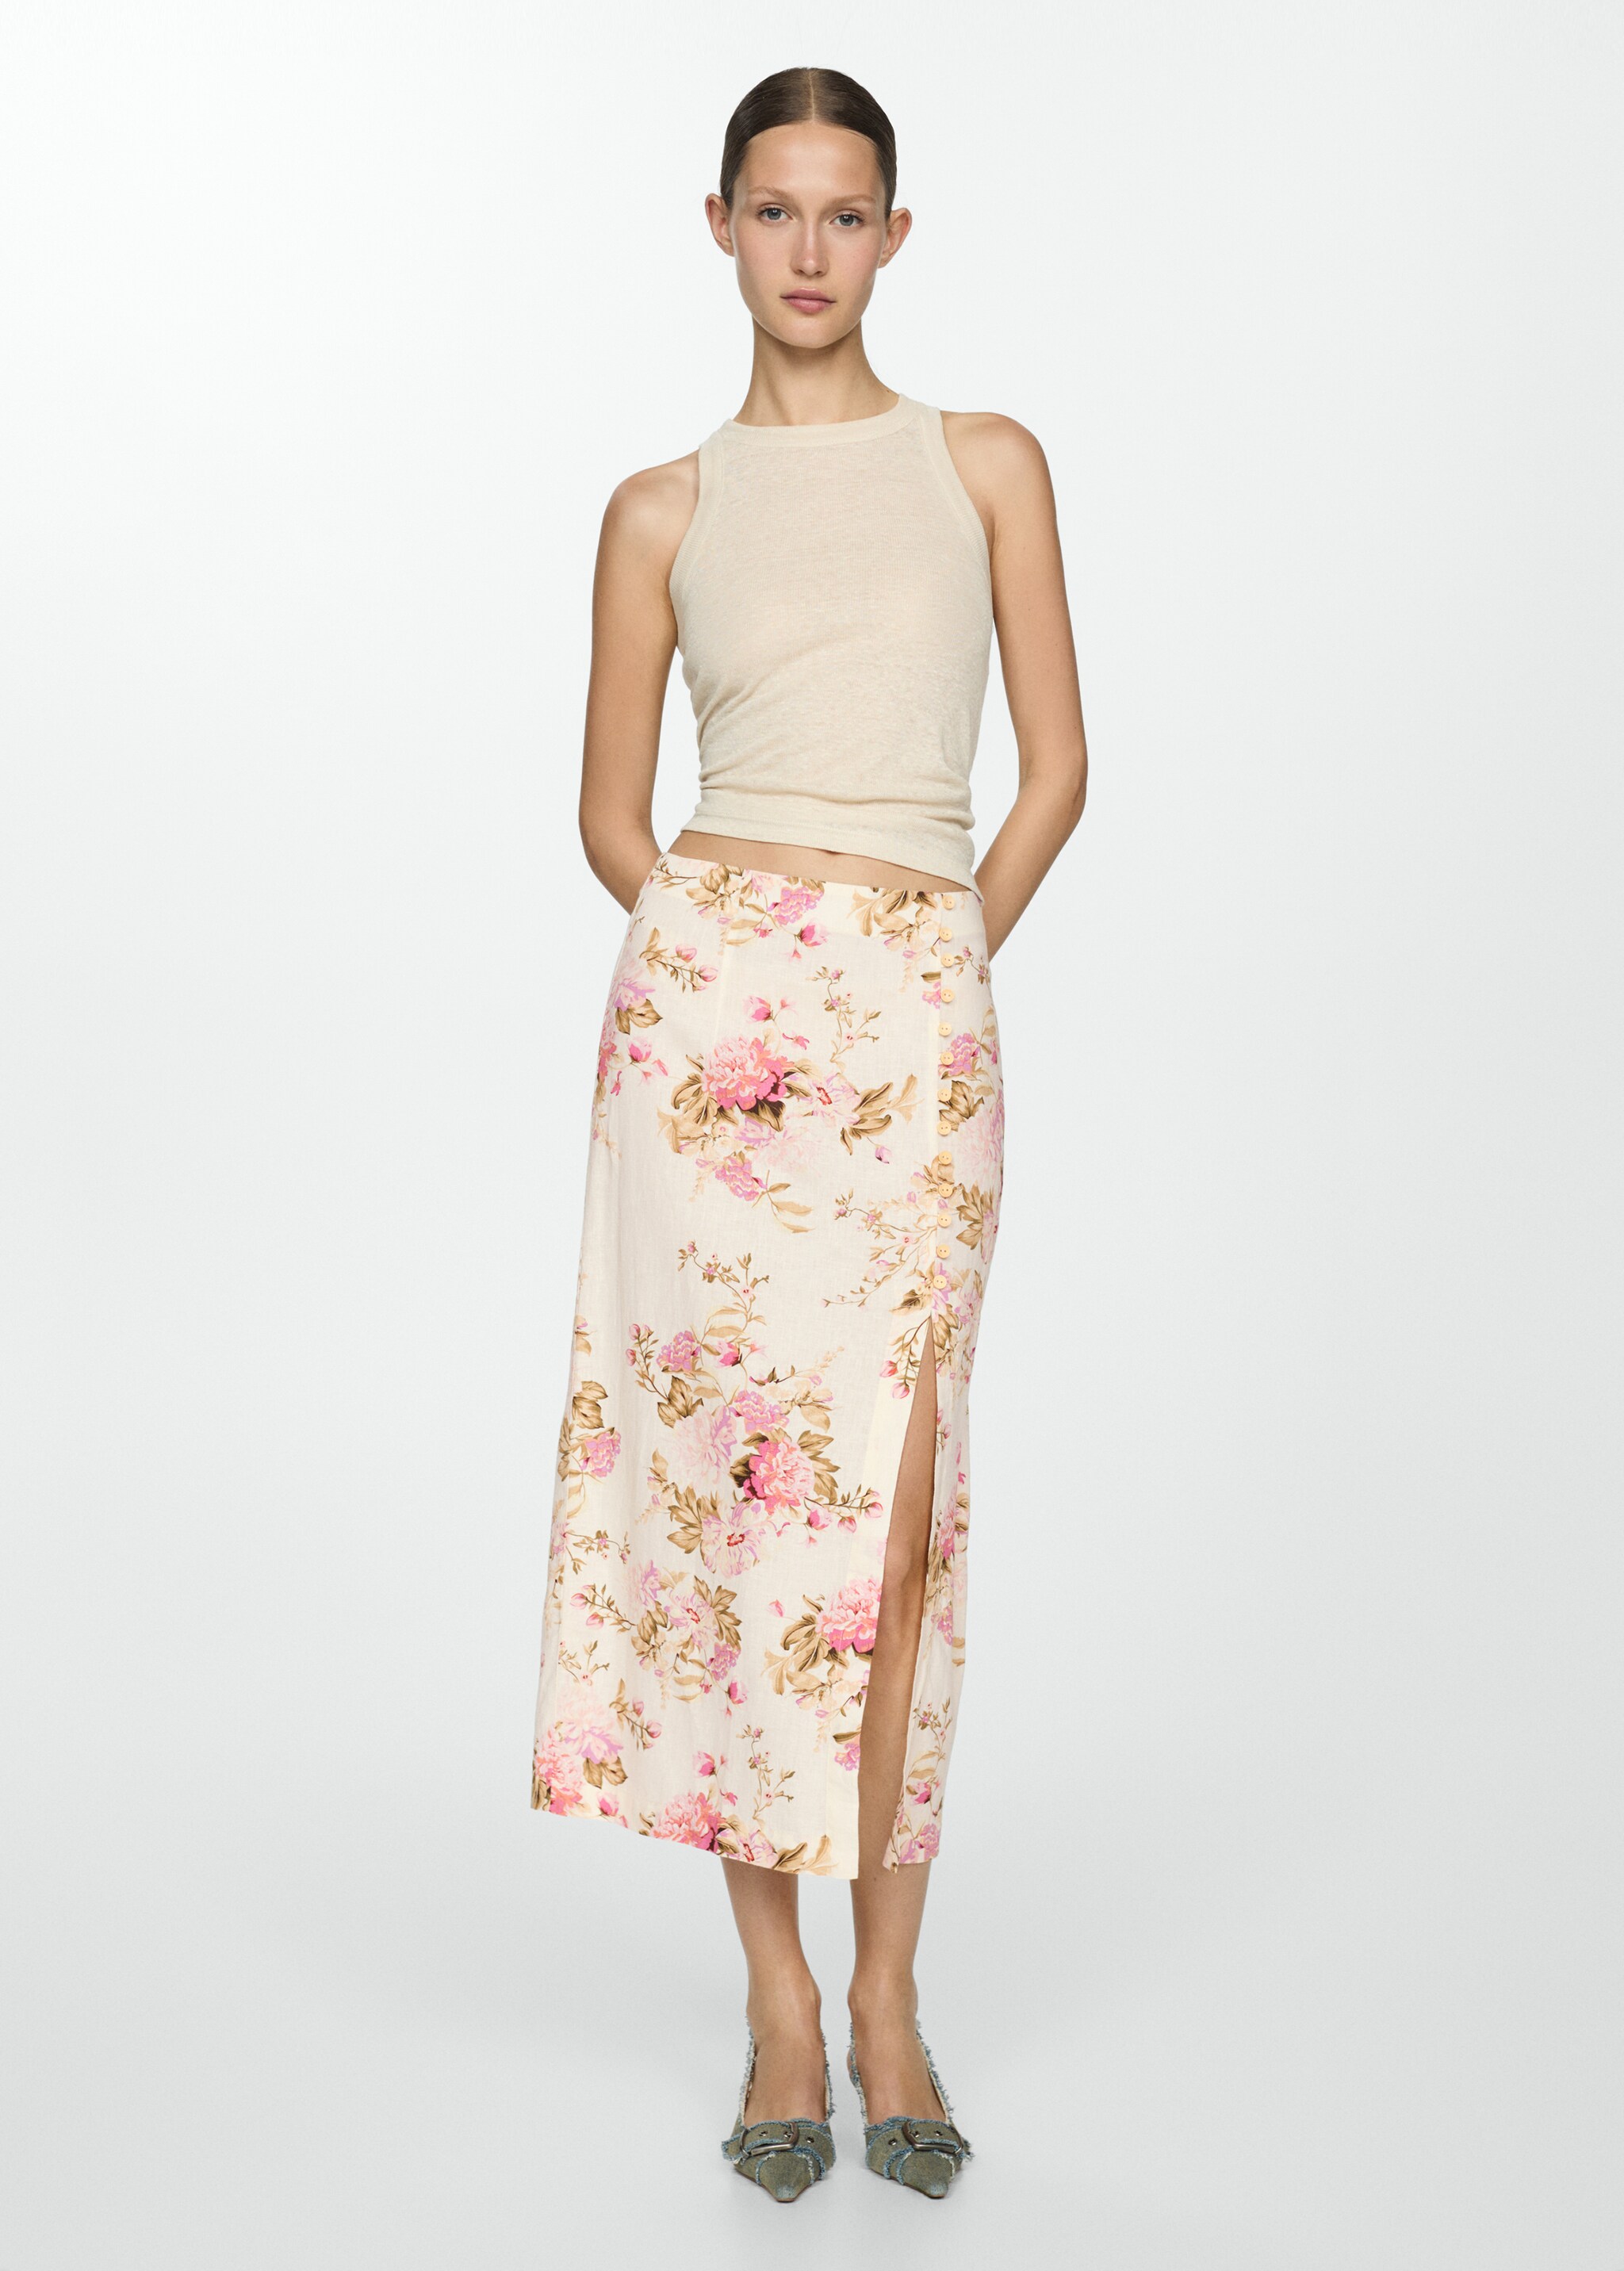 Linen skirt with slit - General plane